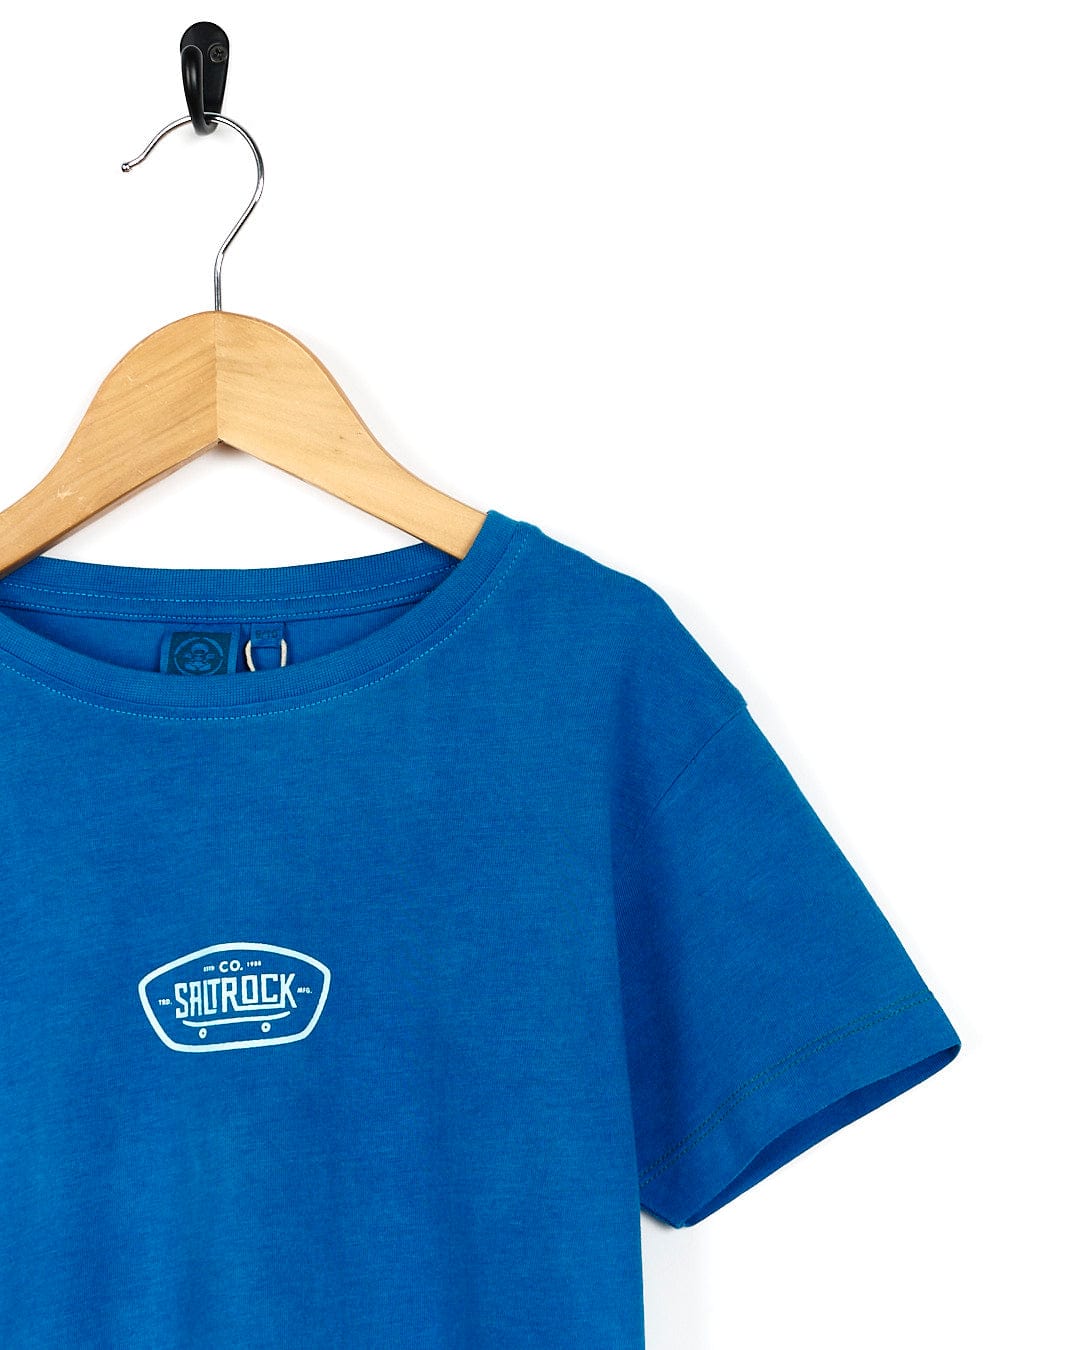 A blue Hardskate - Kids Tie Dye Short Sleeve T-Shirt with the Saltrock logo on it.